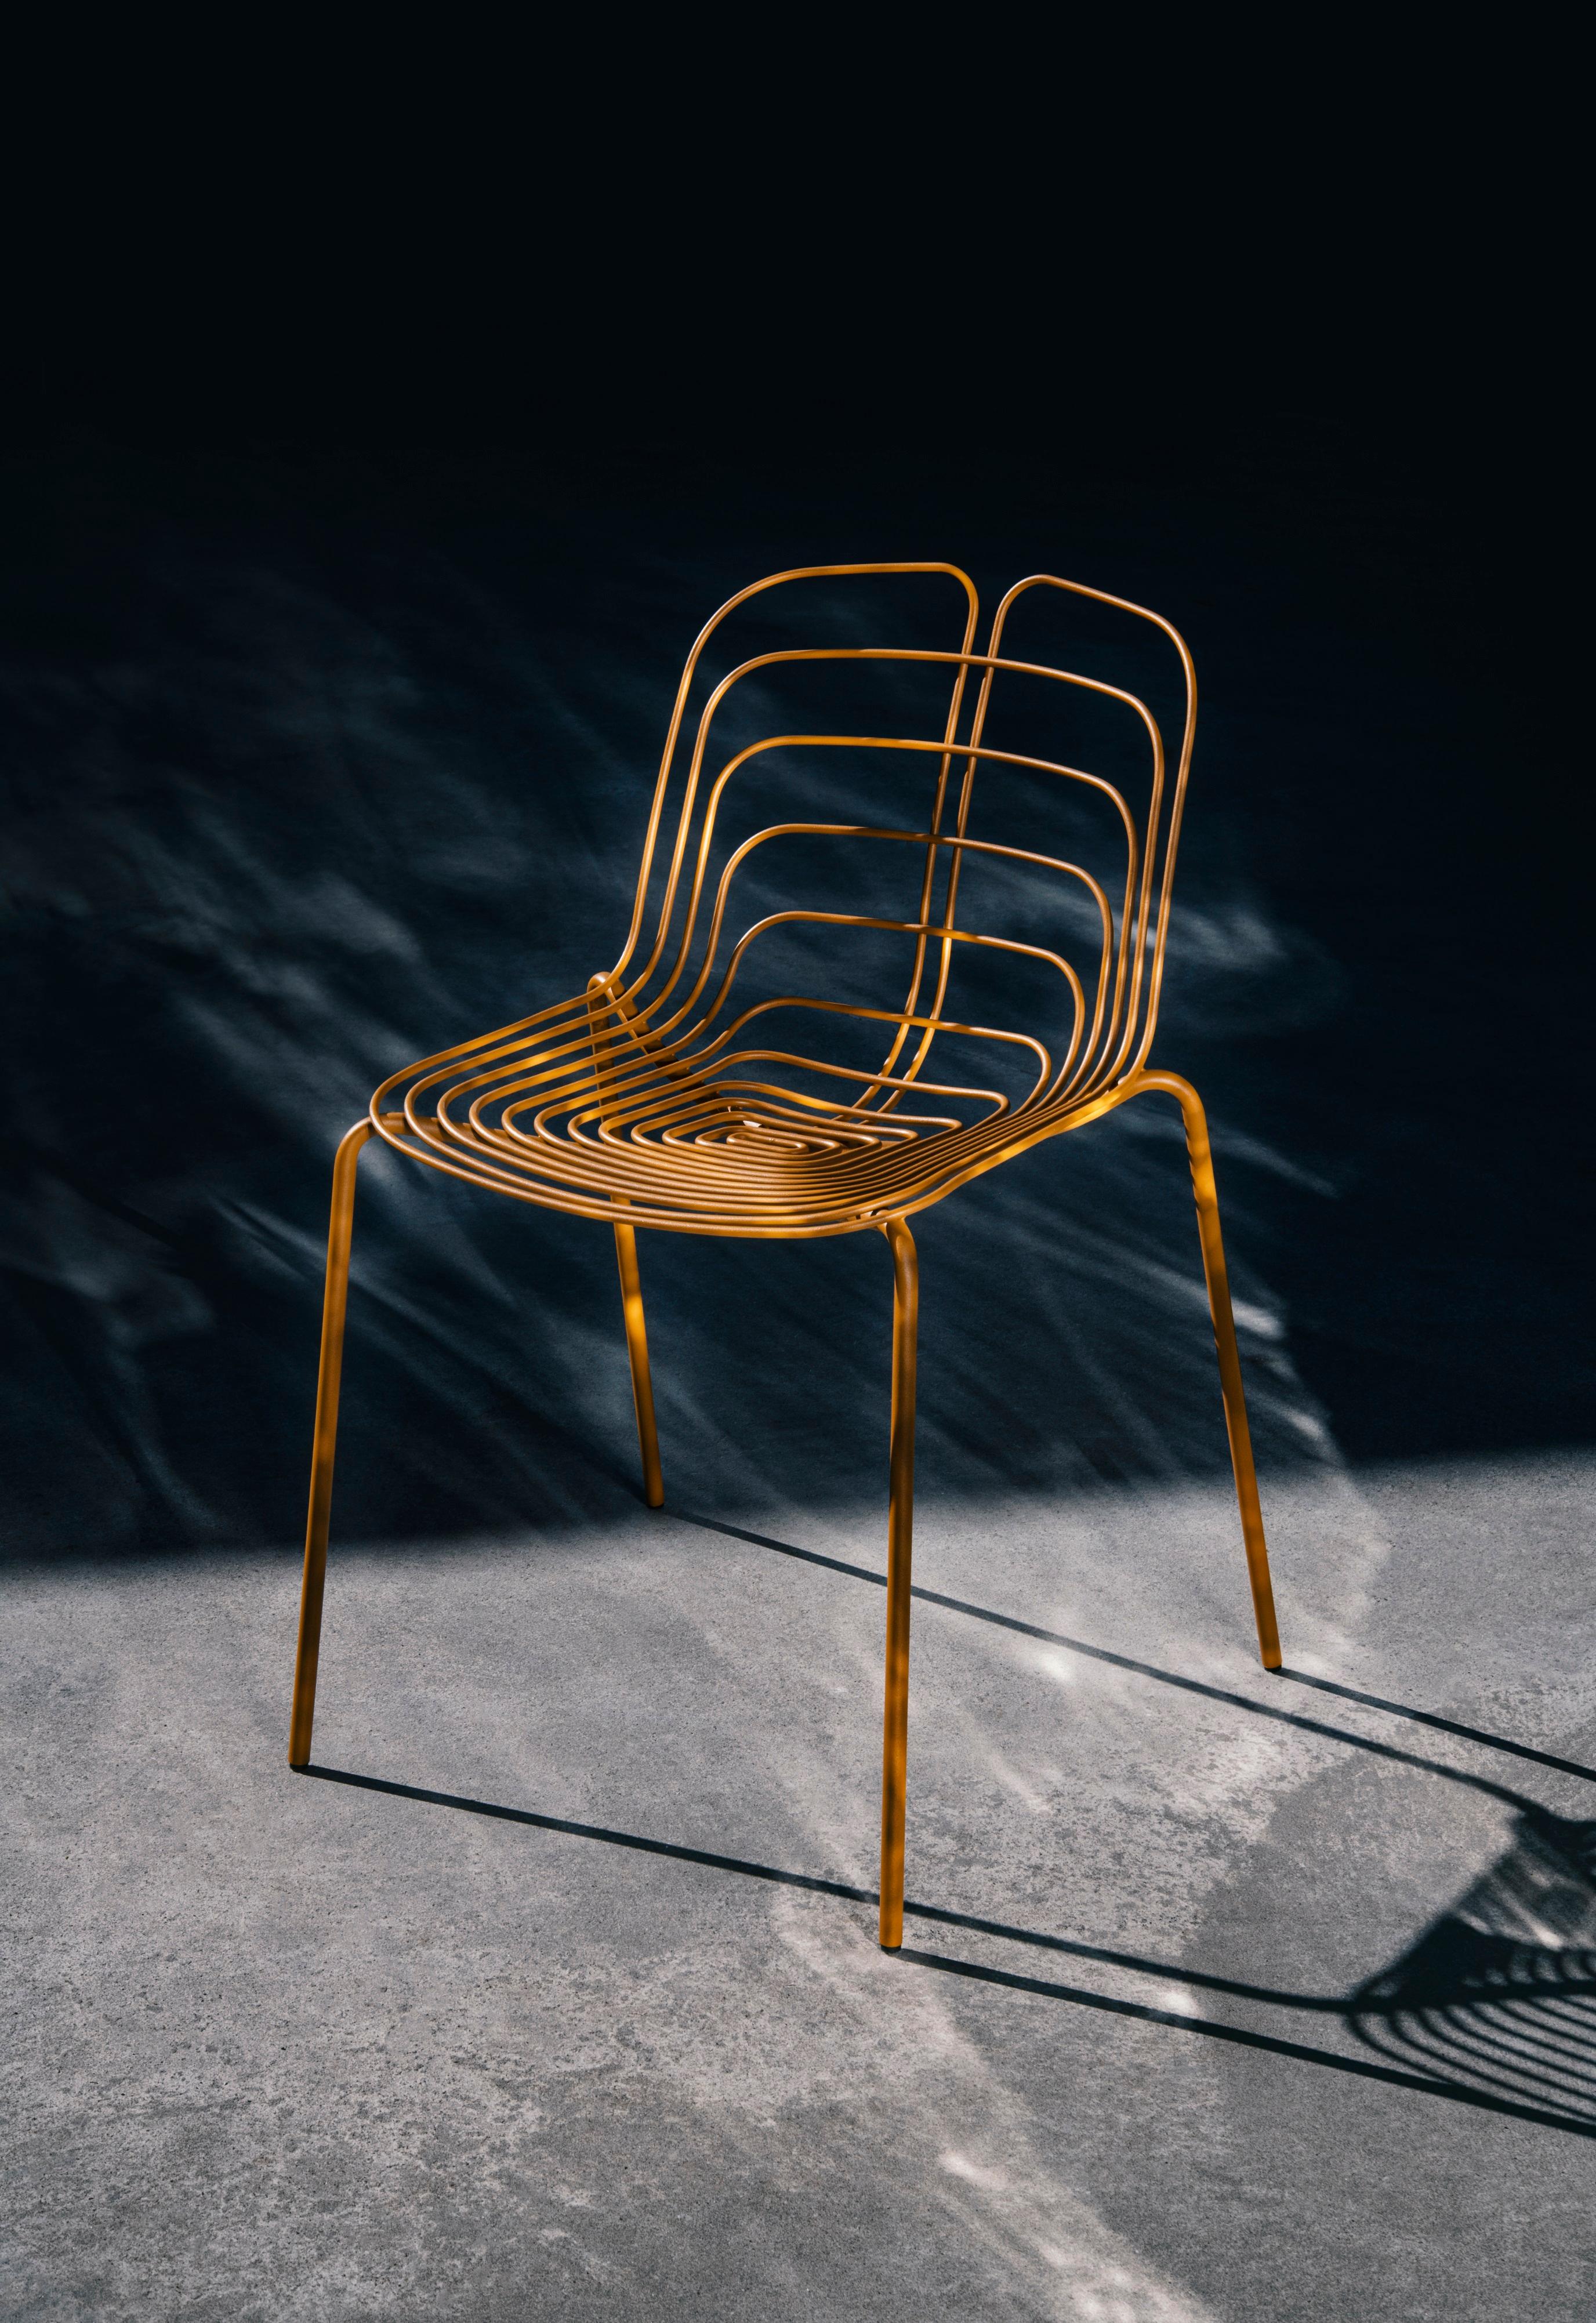 Stapelbar - bis zu 3
Verschiedene Sockel und Ausführungen erhältlich.
Der Wired Chair von Michael Young ist eine stolze Hommage an das ikonische Design von Harry Bertoia. Diese aktualisierte Version eines Klassikers ist aus demselben industriellen